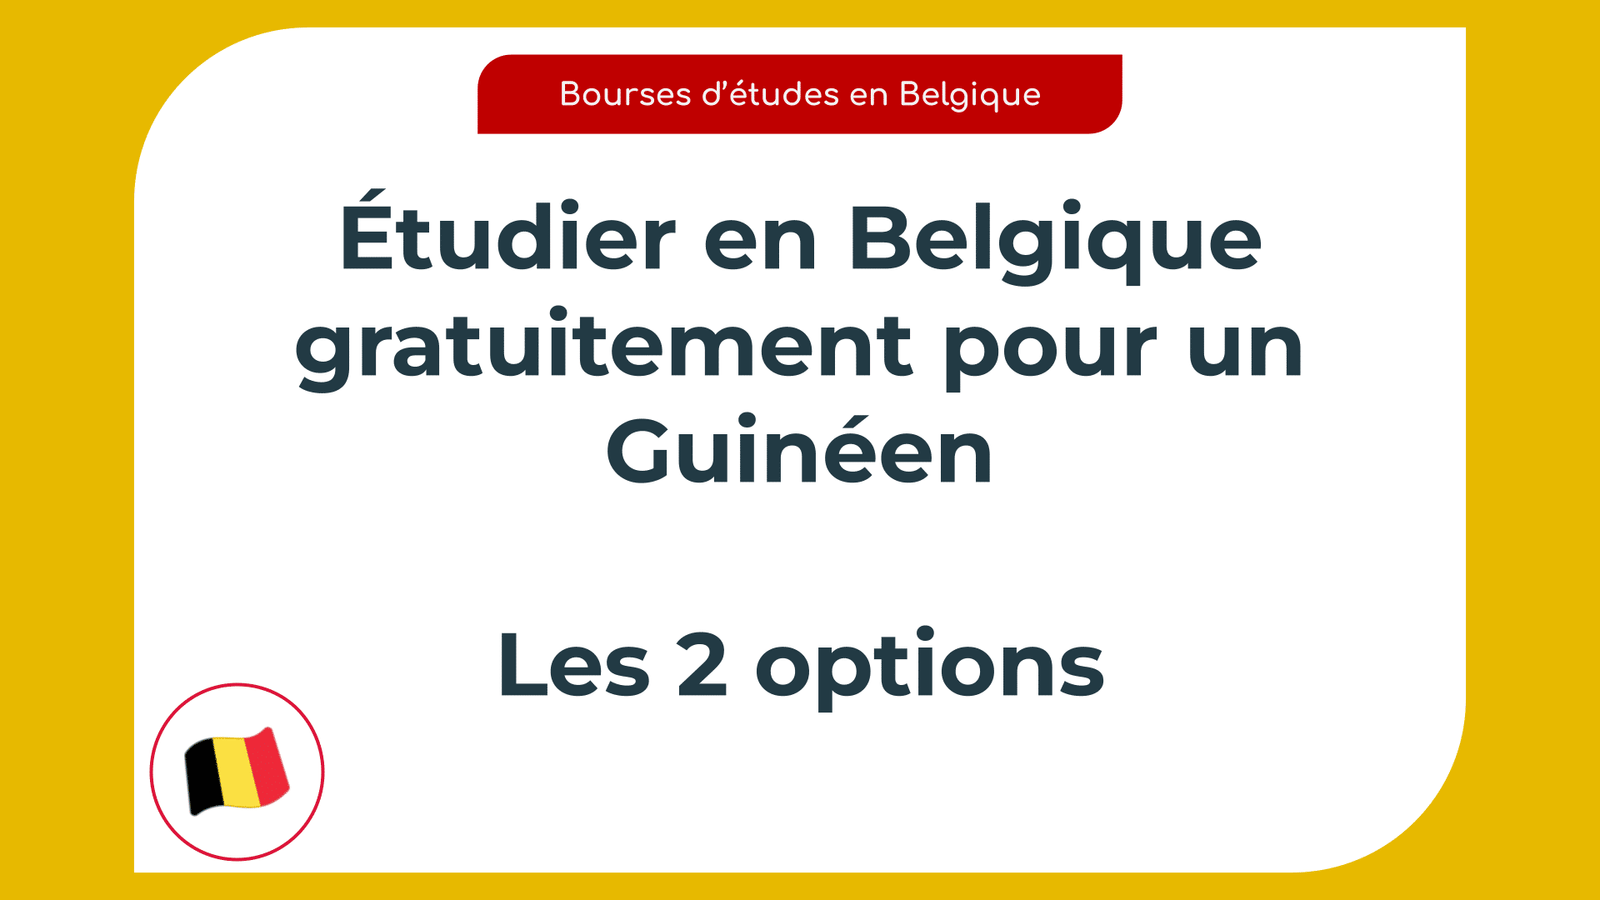 Étudier en Belgique gratuitement pour un Guinéen